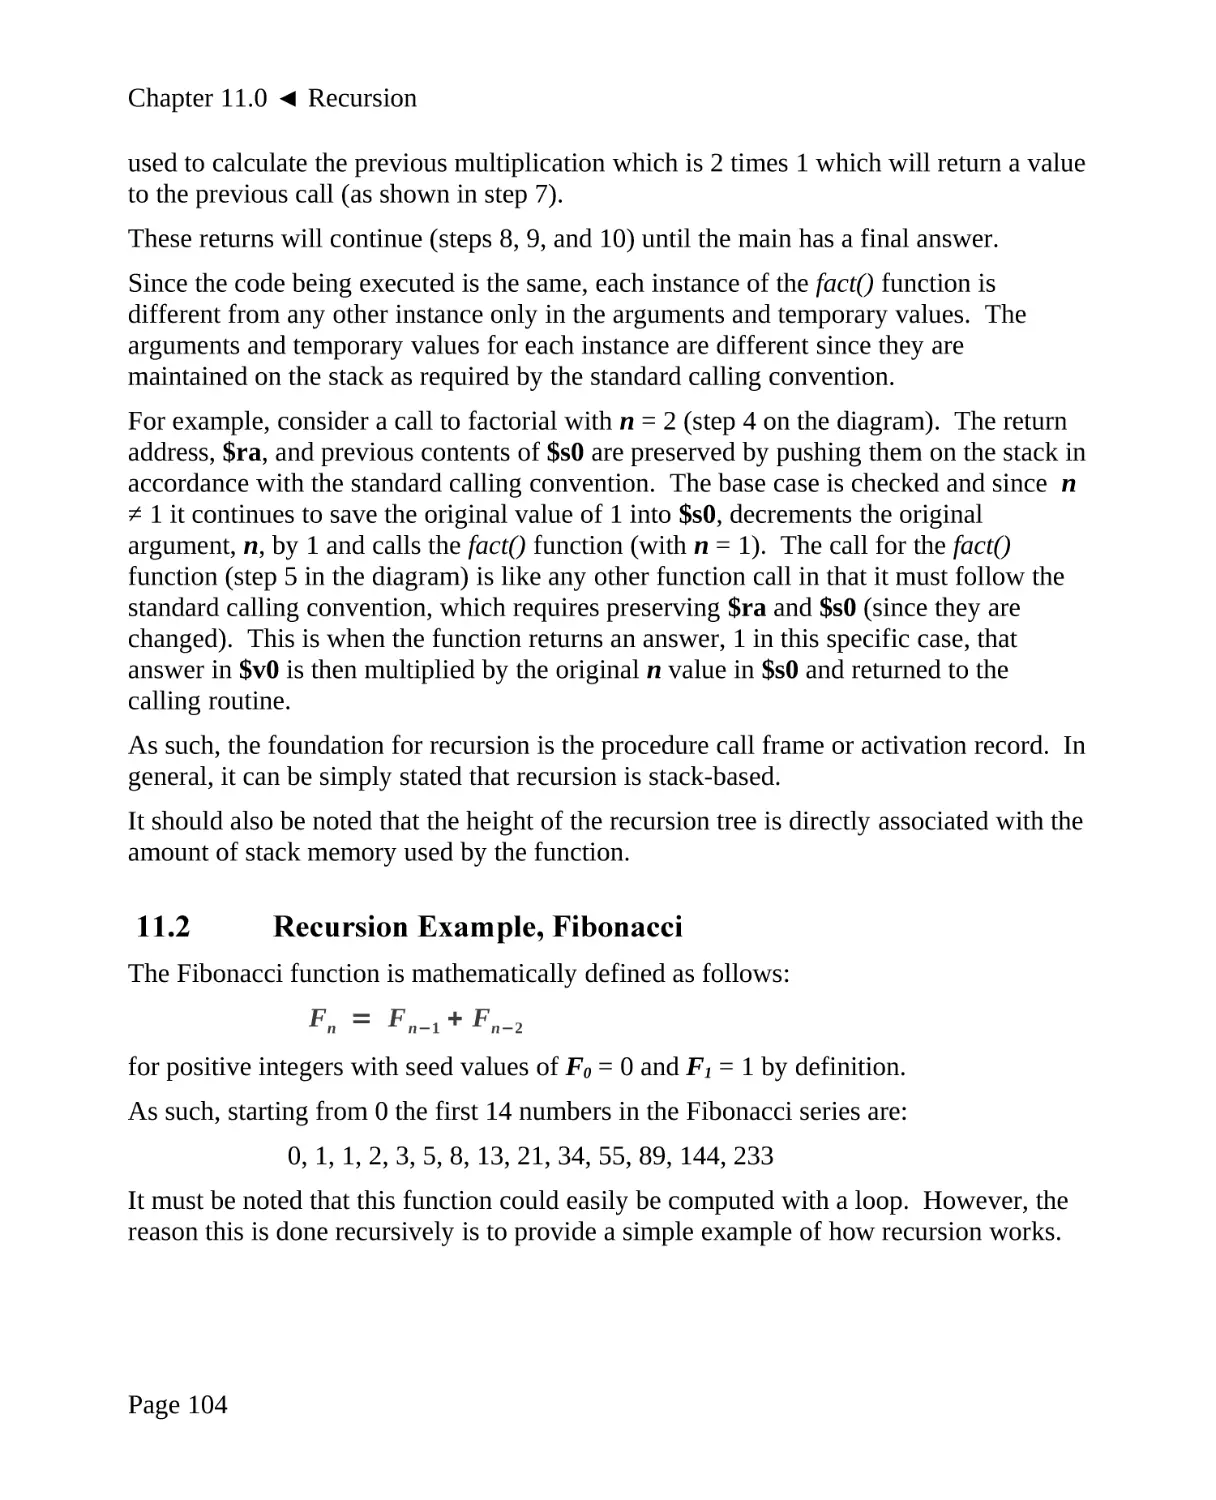 11.2 Recursion Example, Fibonacci